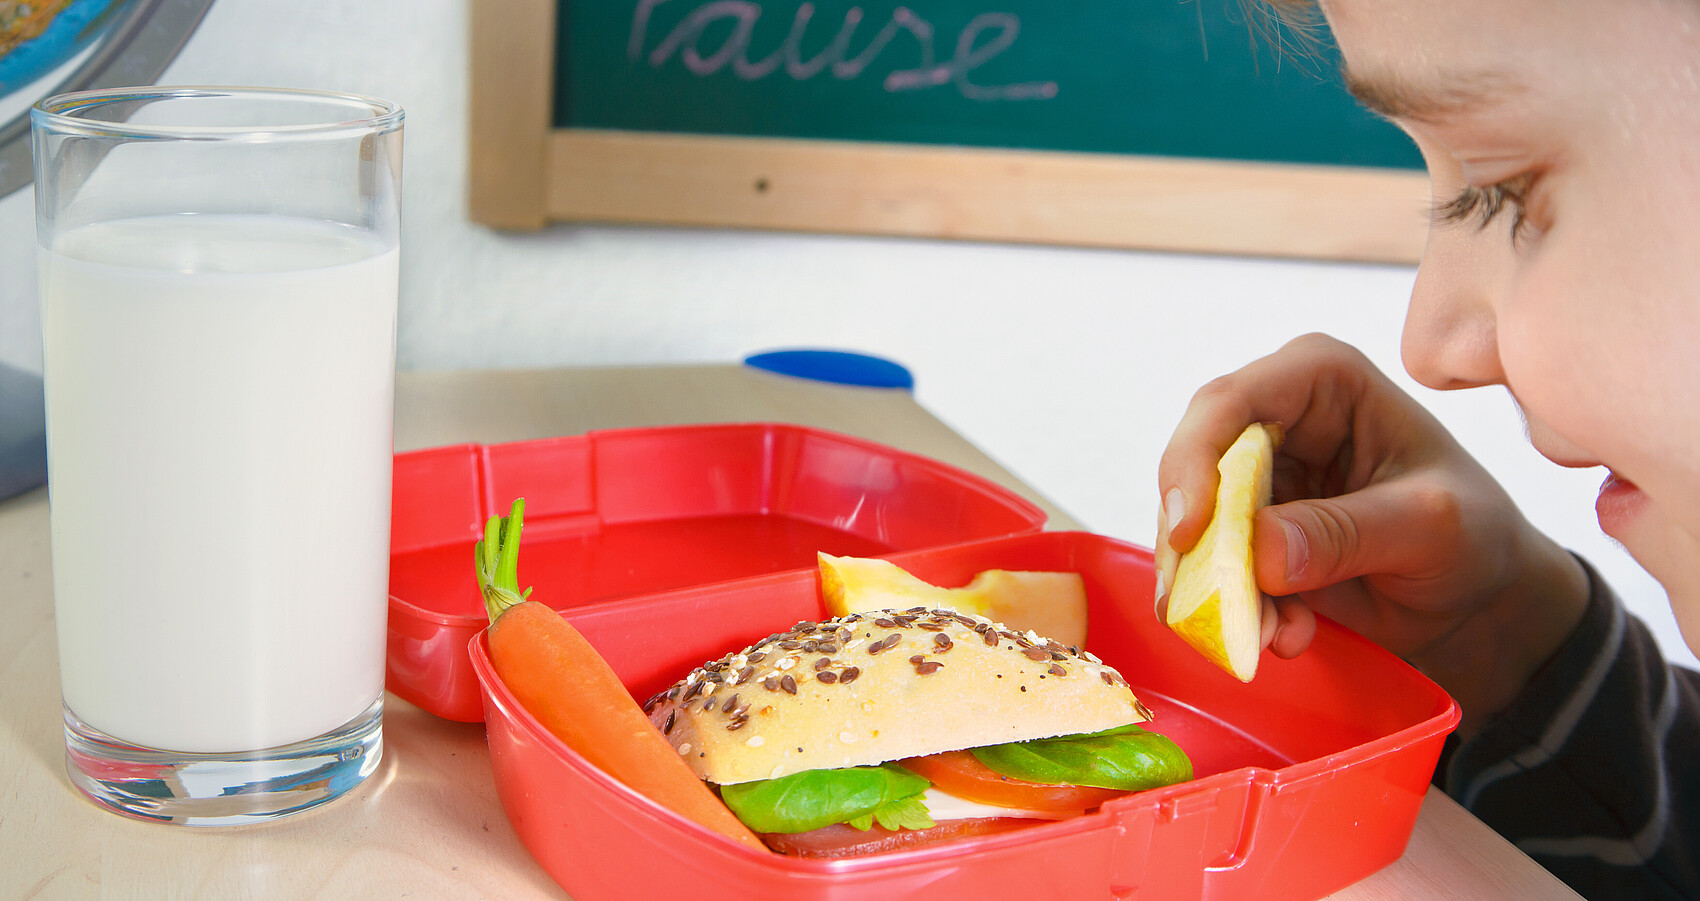 Kind blickt in Brotdose mit gesundem Frühstück aus Vollkornbrot, Äpfeln, Gemüse, davor ein Glas Milch